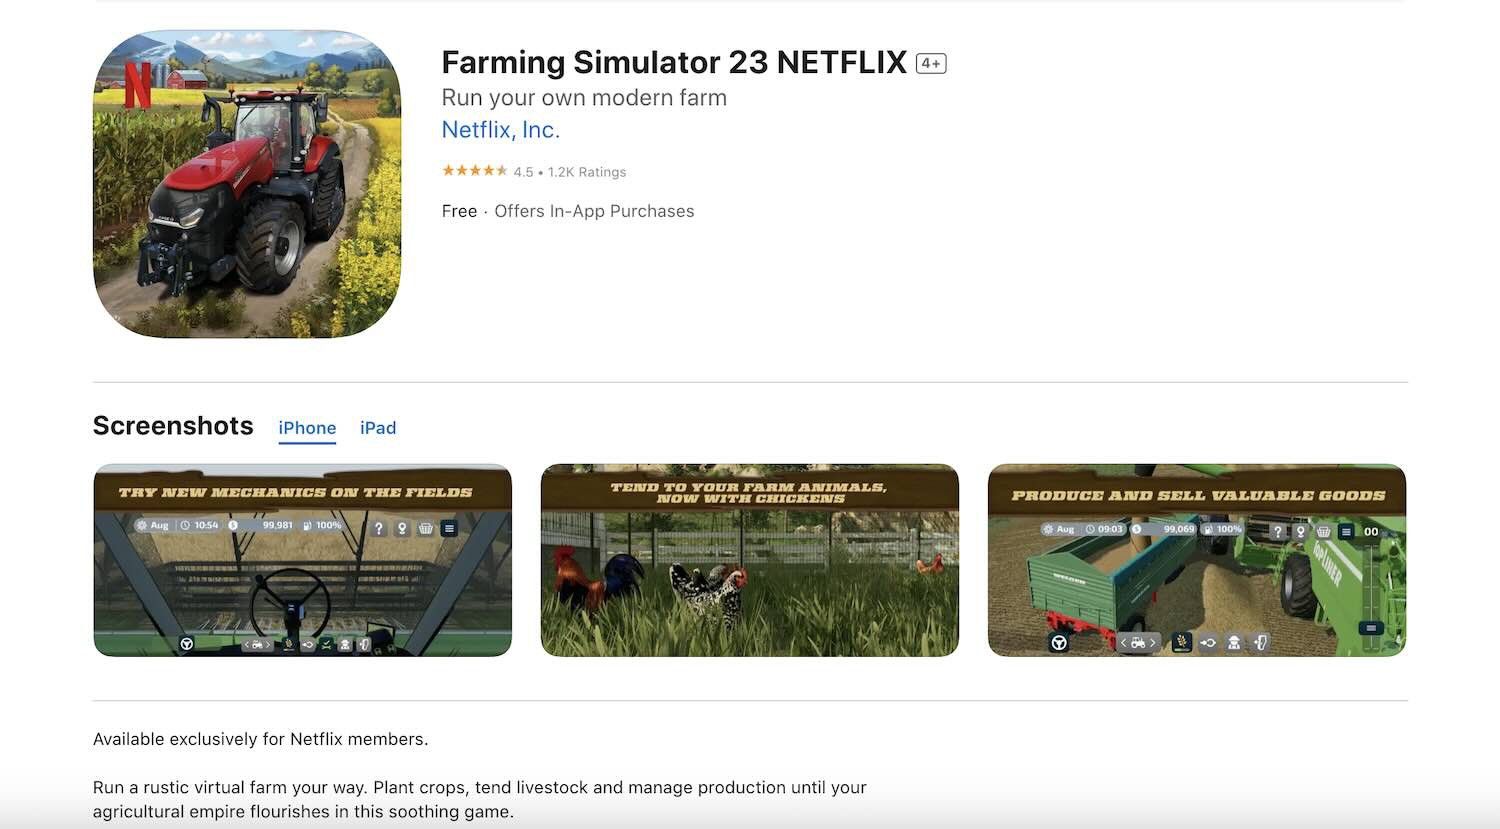 Ban-sao-Farming-Simulator-23-NETFLIX-4.jpg